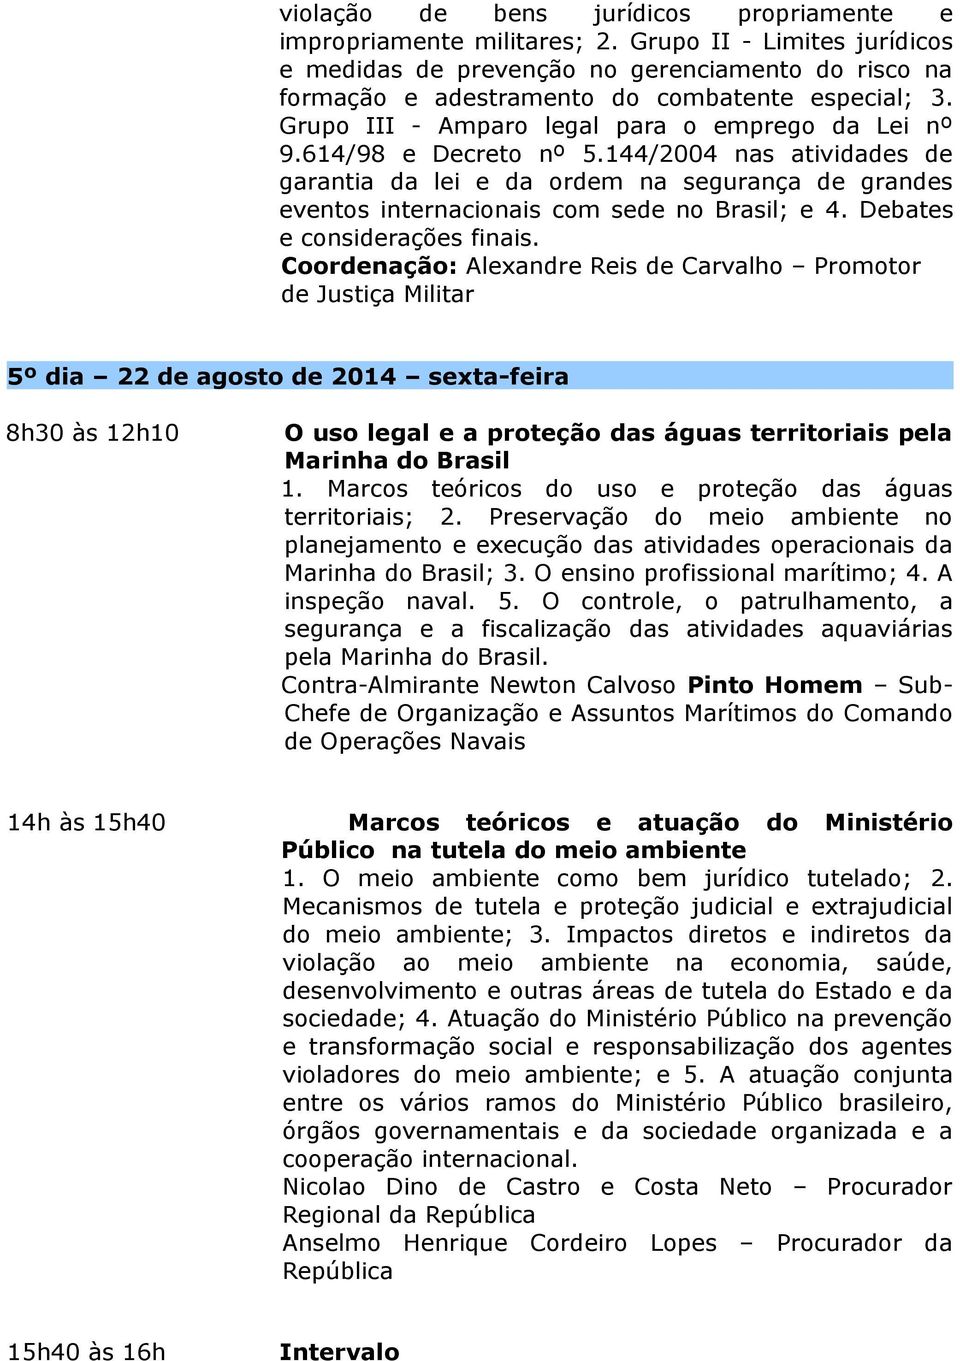 614/98 e Decreto nº 5.144/2004 nas atividades de garantia da lei e da ordem na segurança de grandes eventos internacionais com sede no Brasil; e 4. Debates e considerações finais.